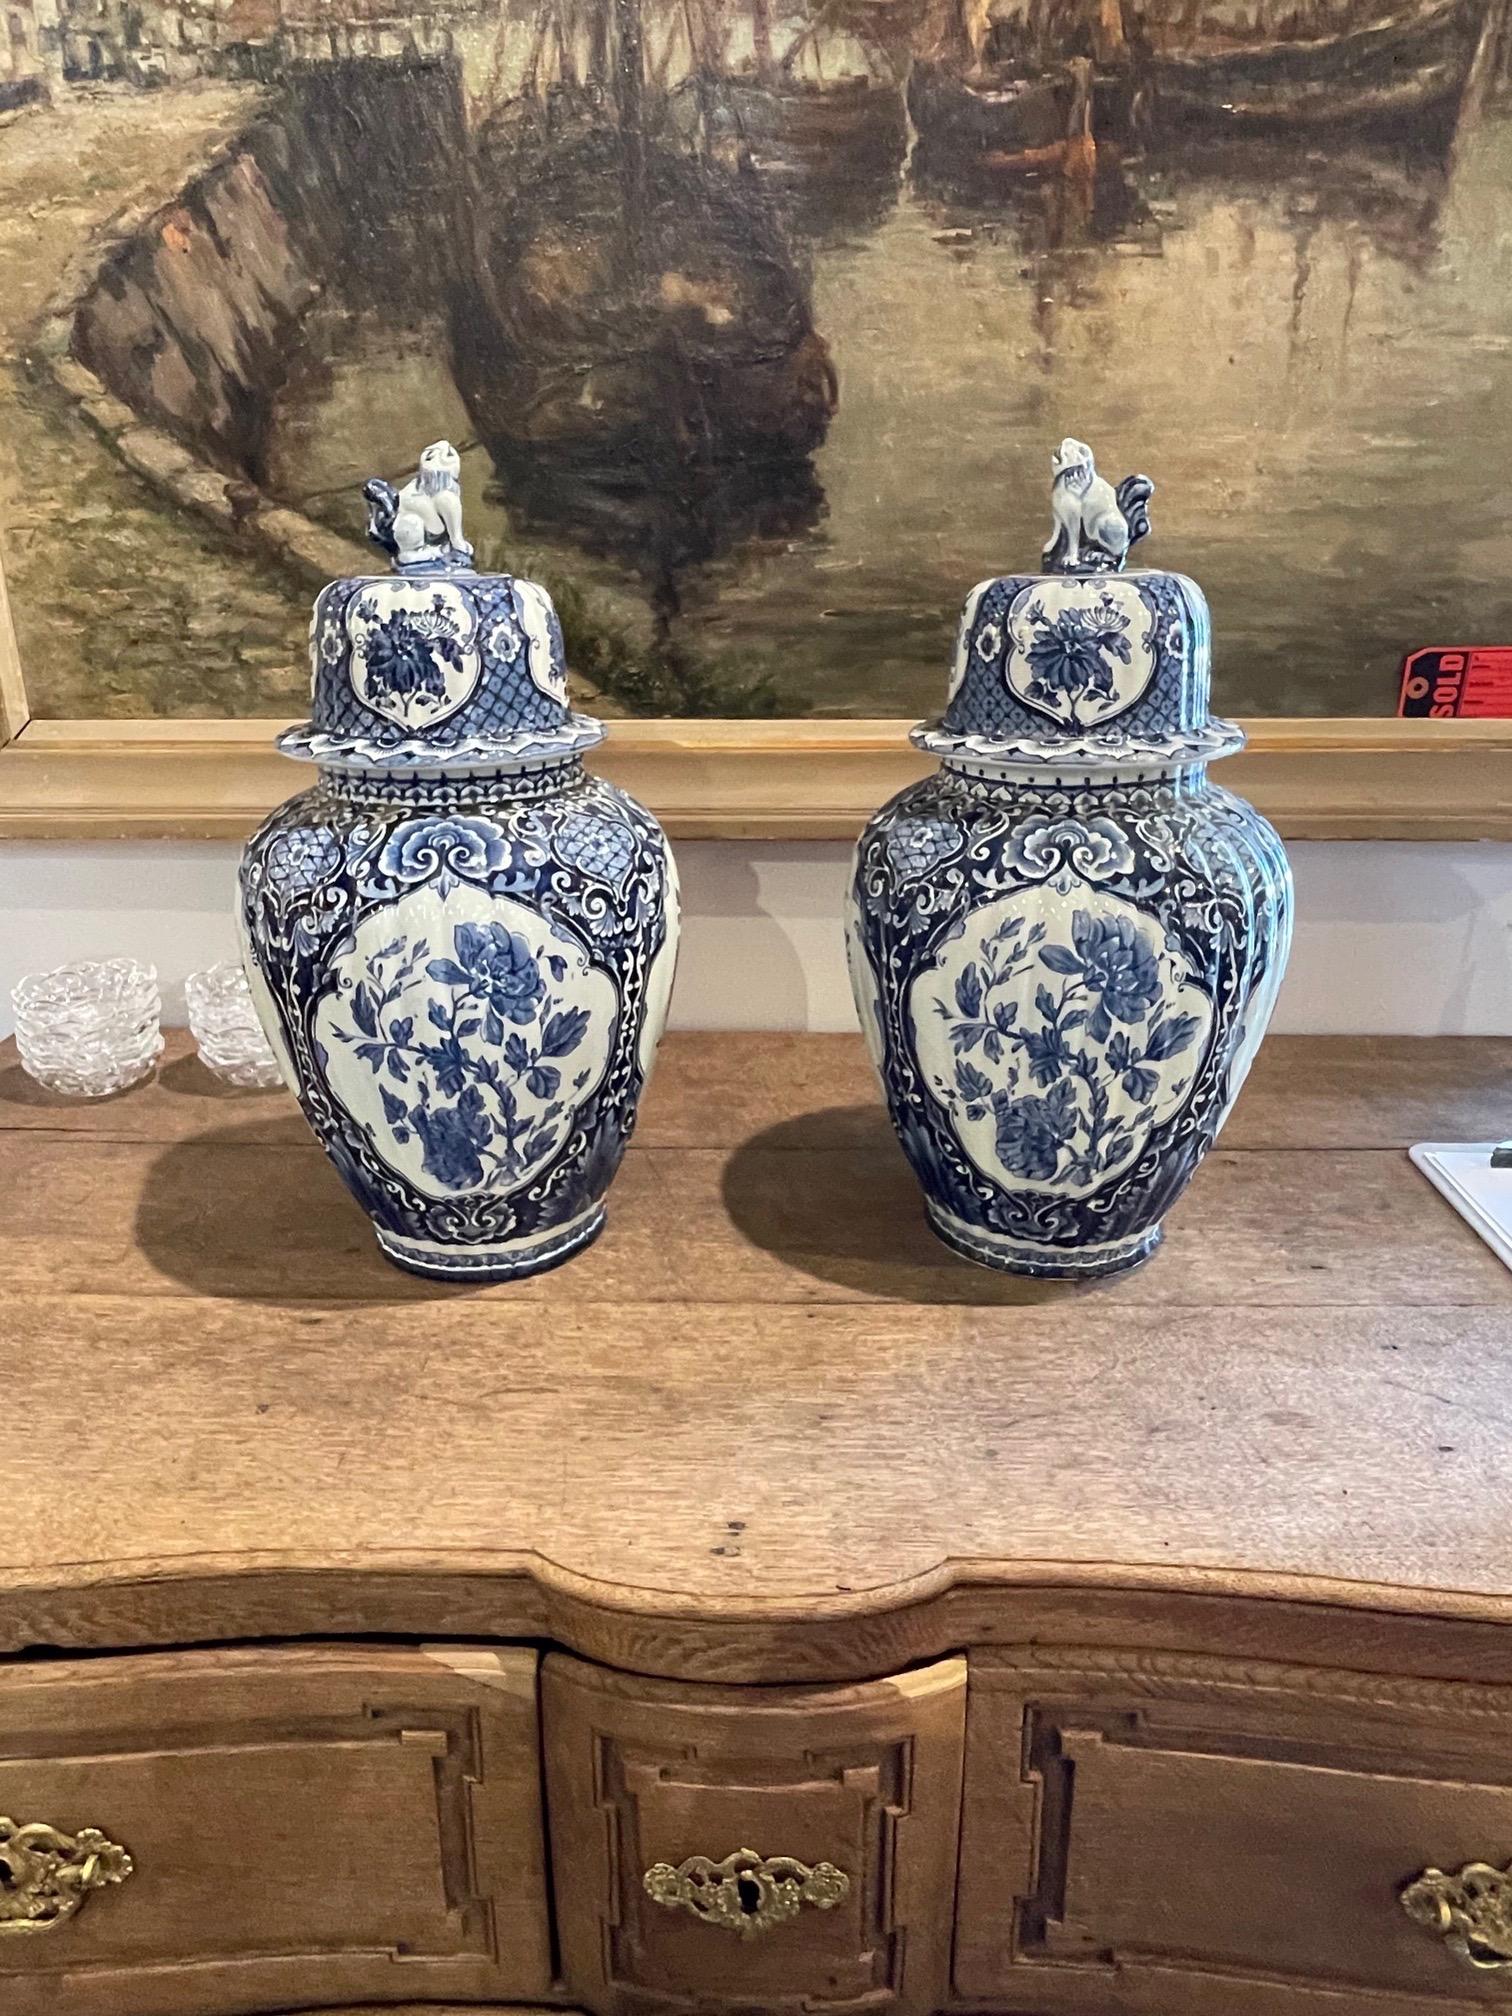 Dekoratives Paar blauer Delfter Porzellan-Deckelvasen. Wunderschönes florales Muster in herrlichen Blautönen. Ein fabelhaftes Accessoire!!